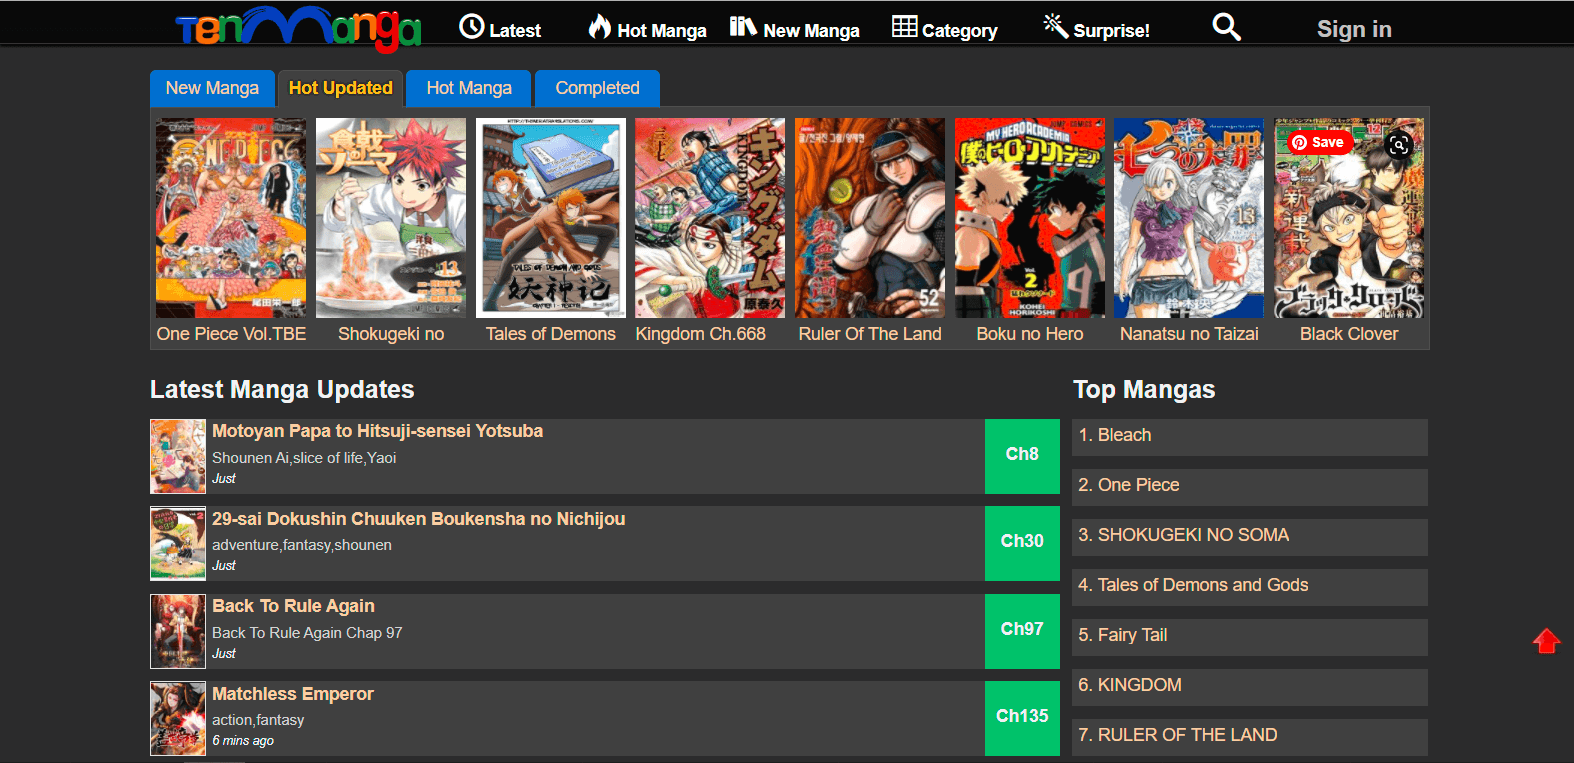 Ten manga sites